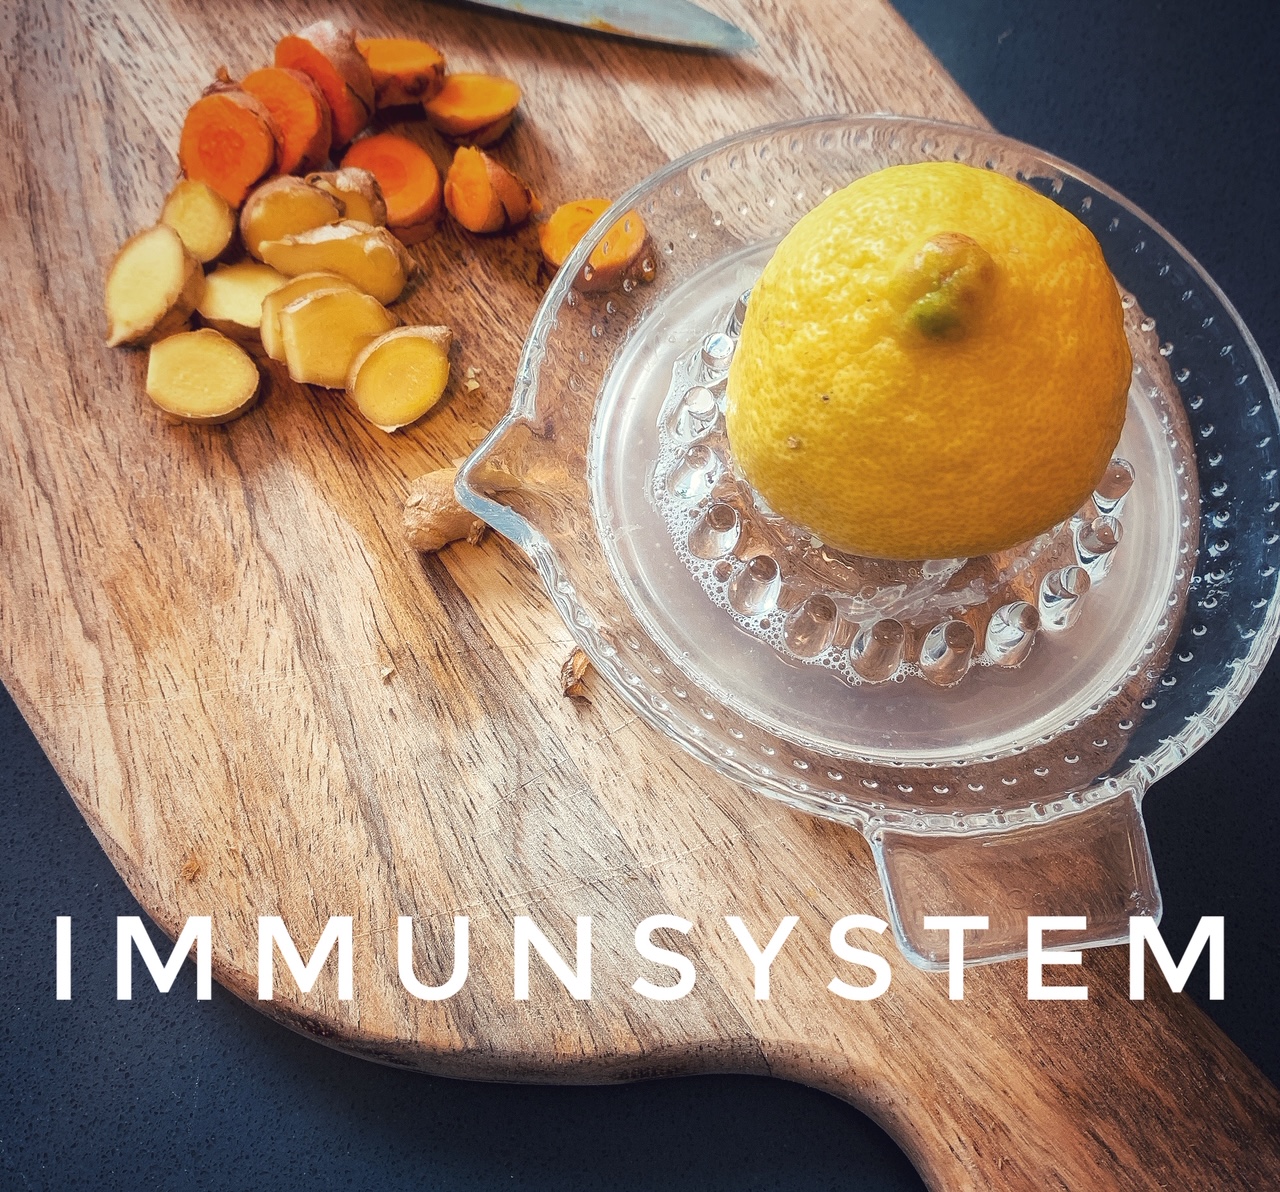 Immunsystem durch Ernährung stärken